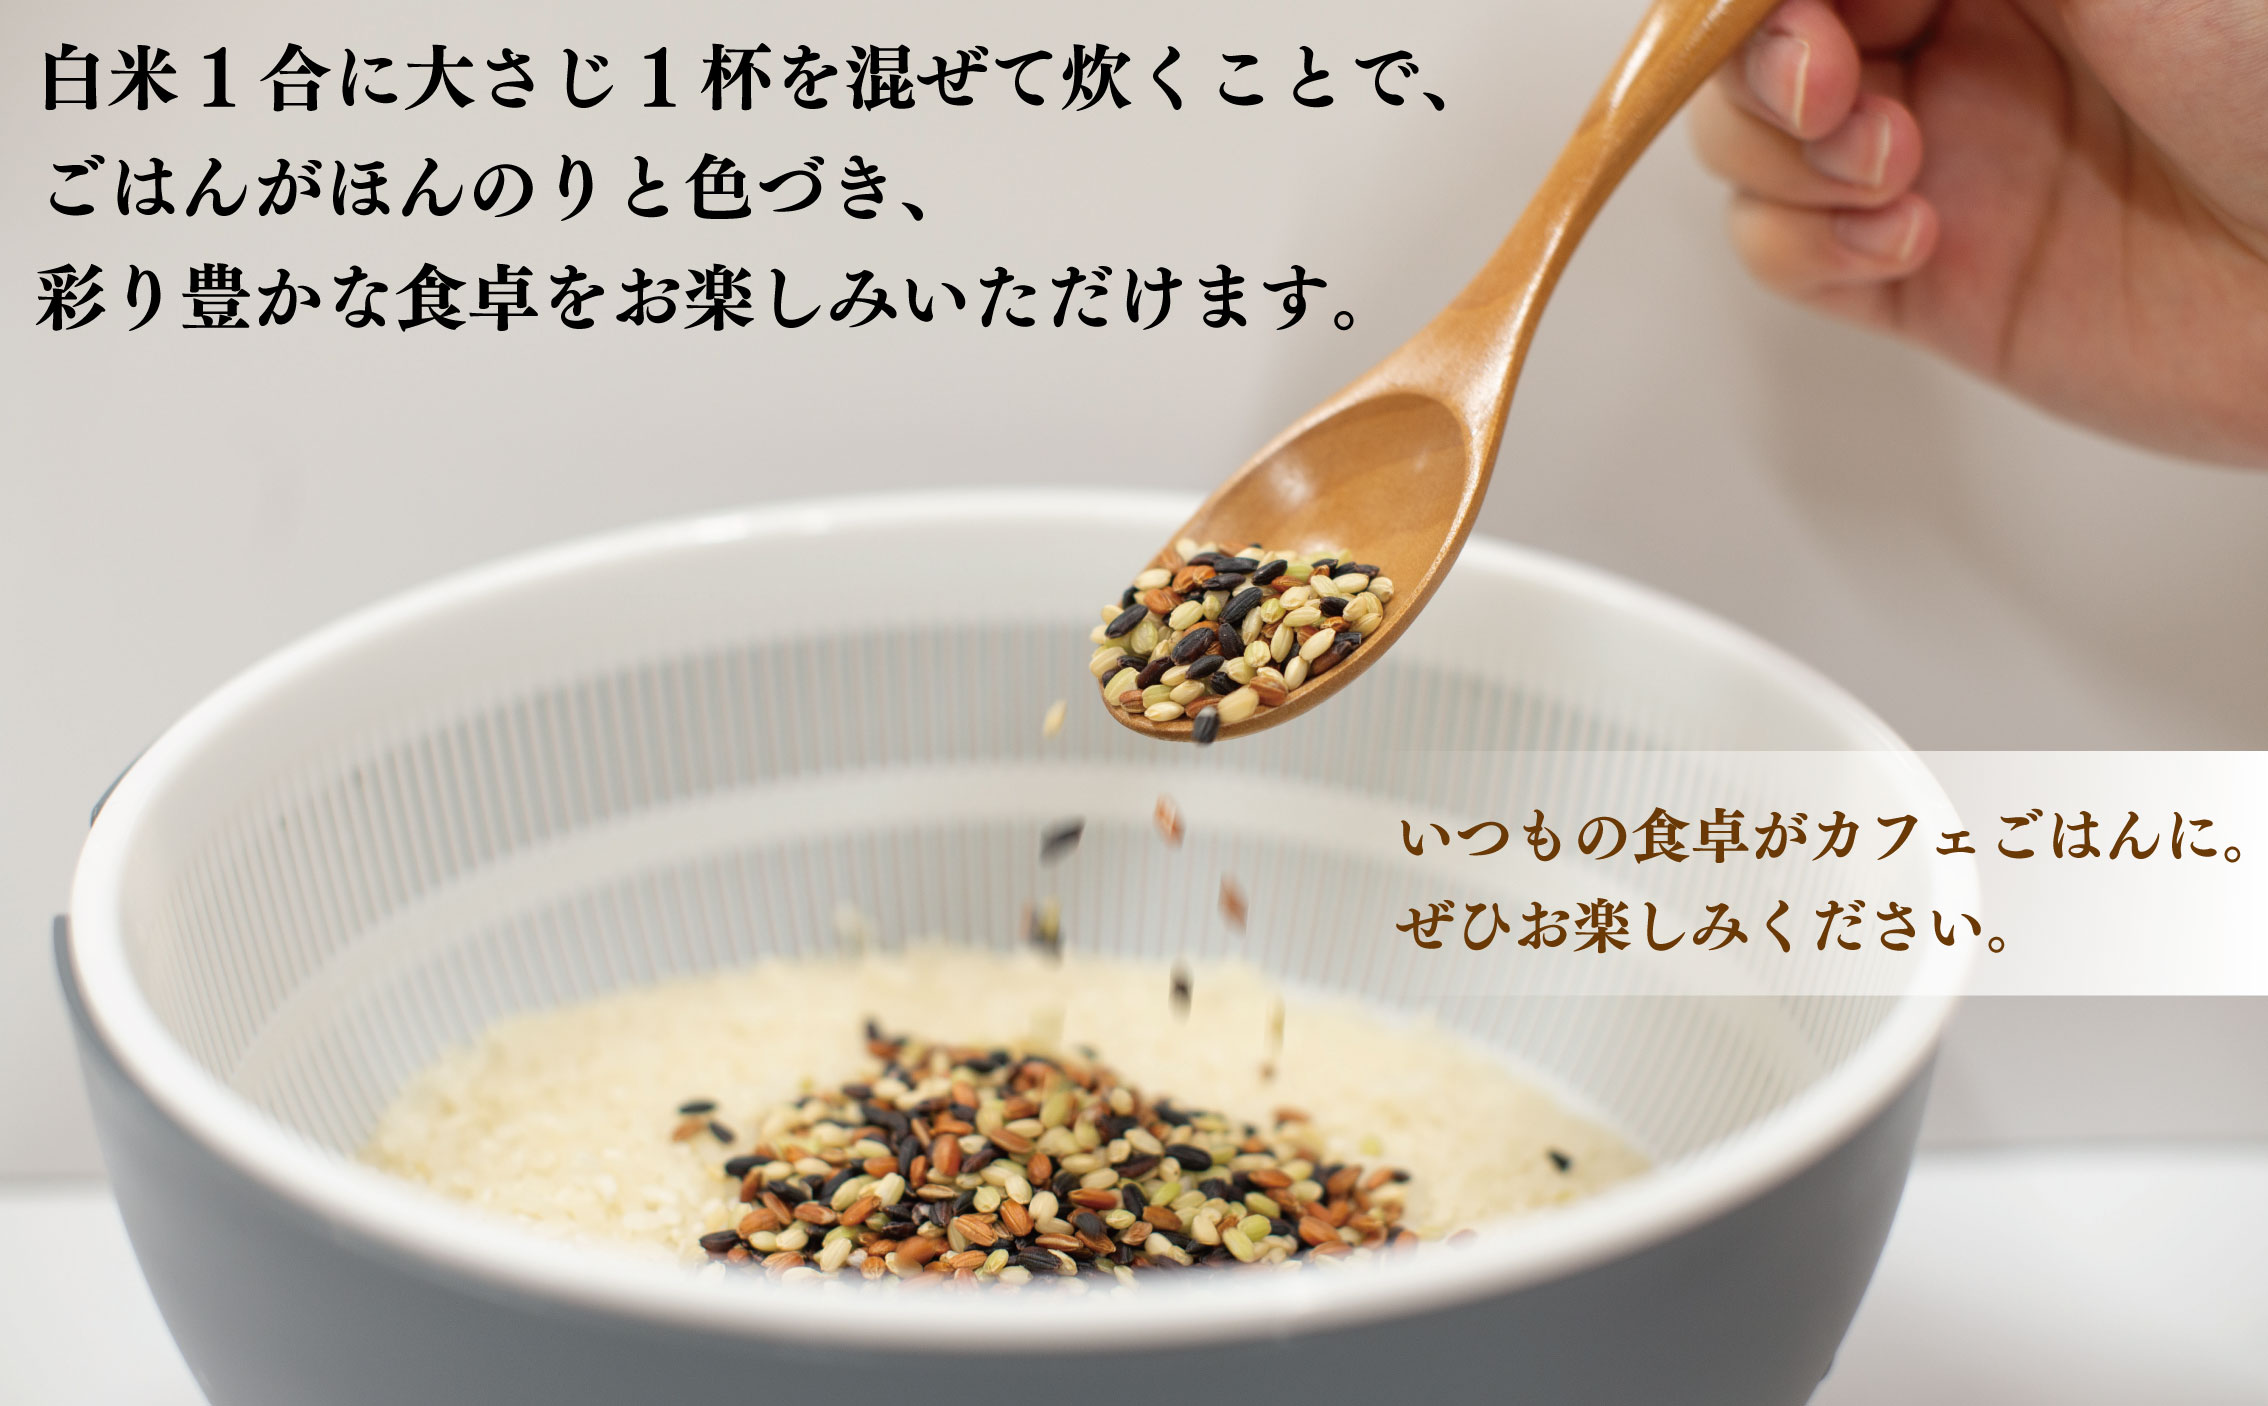 新米 古代米 ブレンド お米 カフェごはんの素 約 400g 400グラム 2個 セット 栽培期間中農薬不使用 赤米 黒米 緑米